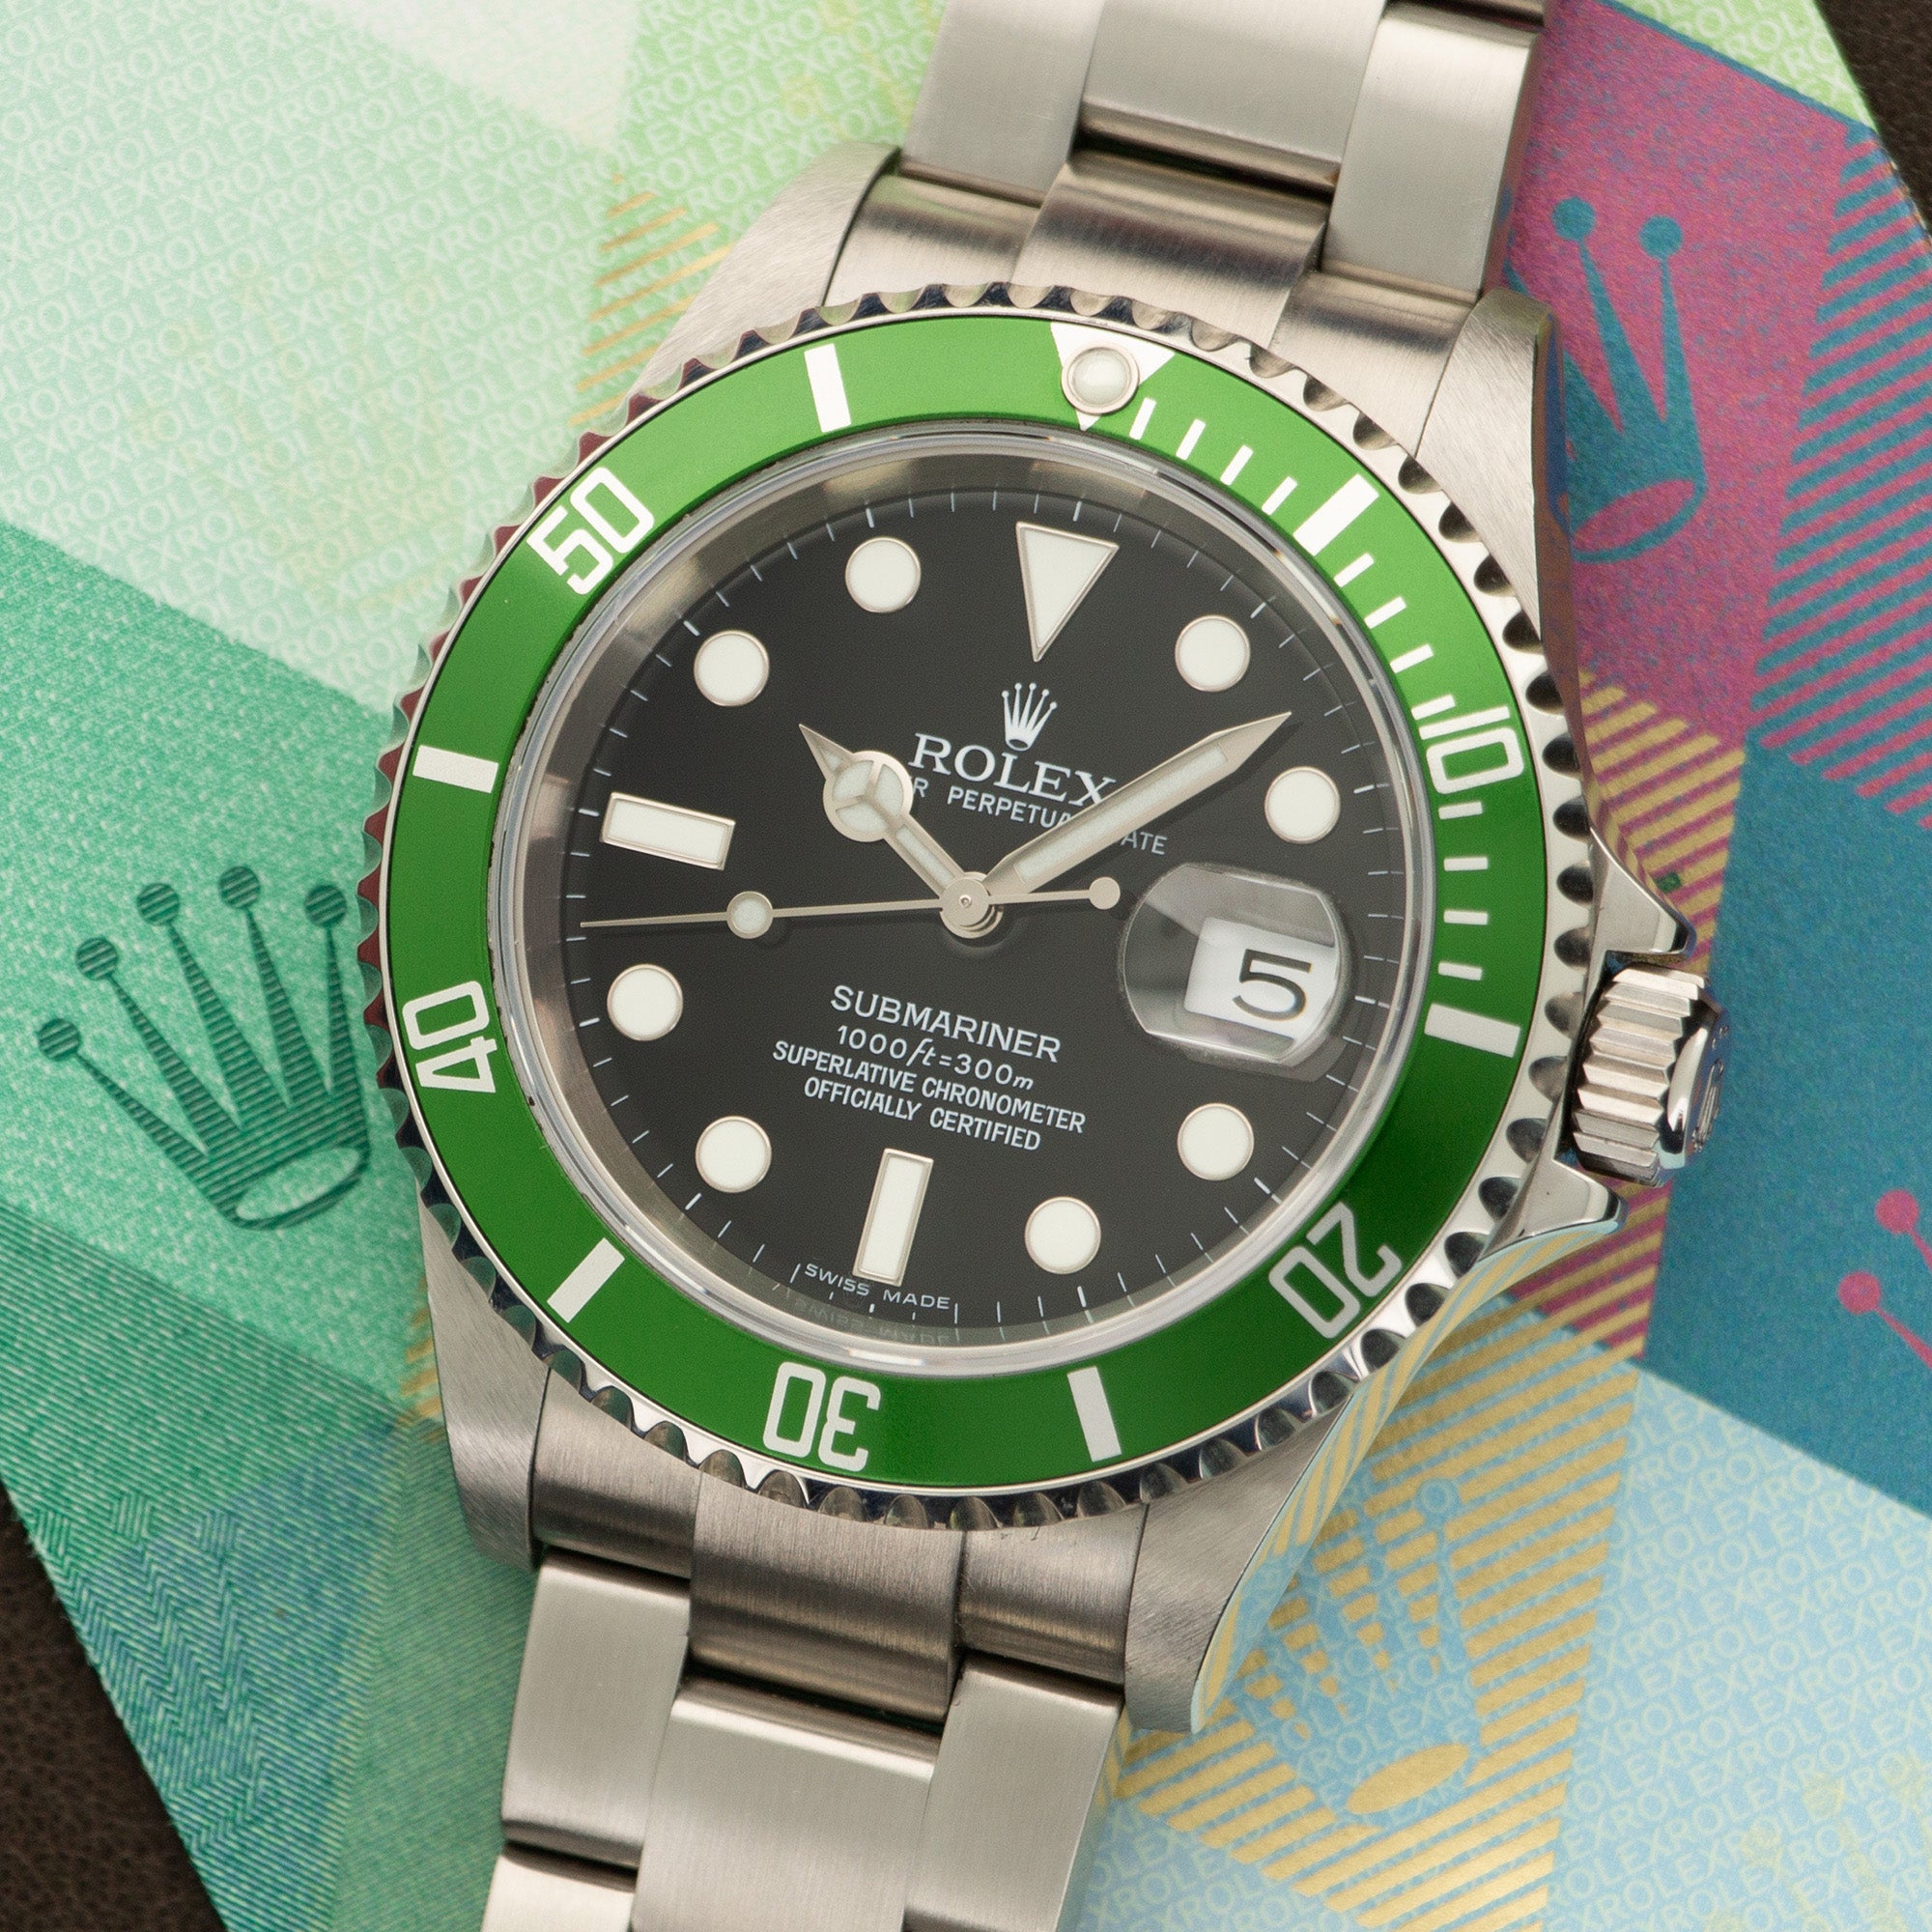 Rolex - Rolex Submariner Anniversary Watch Ref. 16610LV - The Keystone Watches